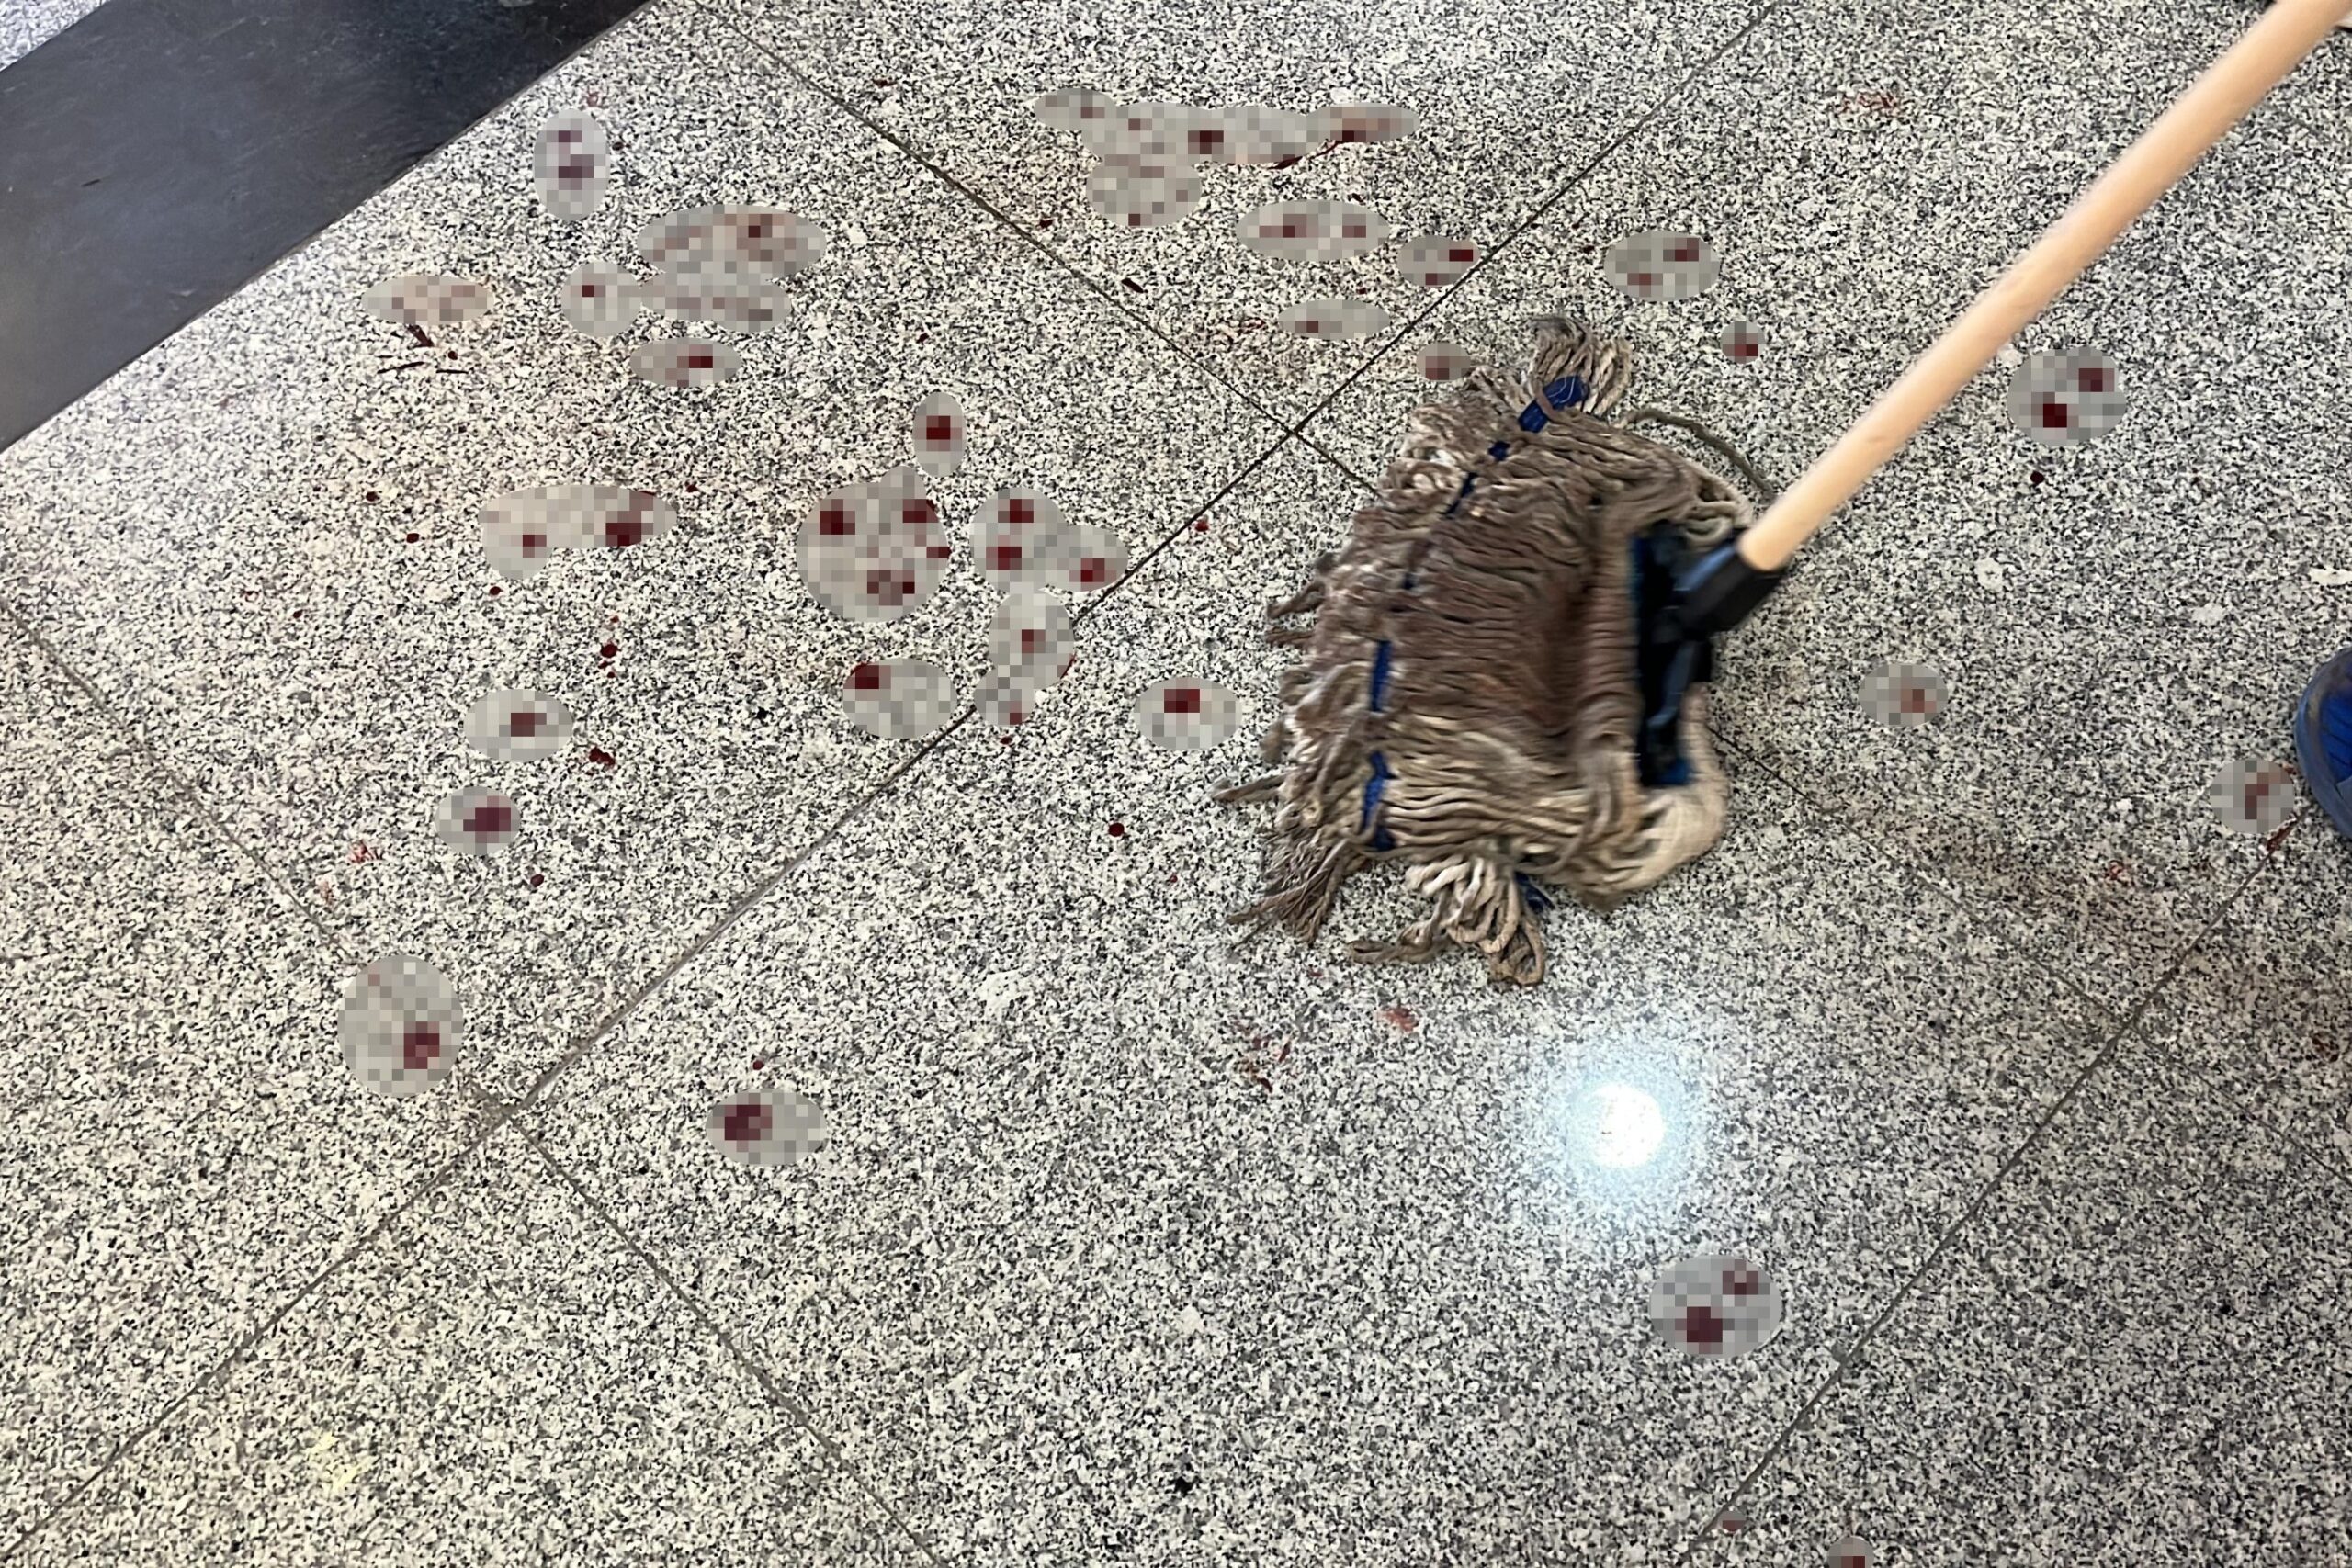  Dicle Üniversitesi’nde eski öğrenci dekan yardımcısını bıçakladı